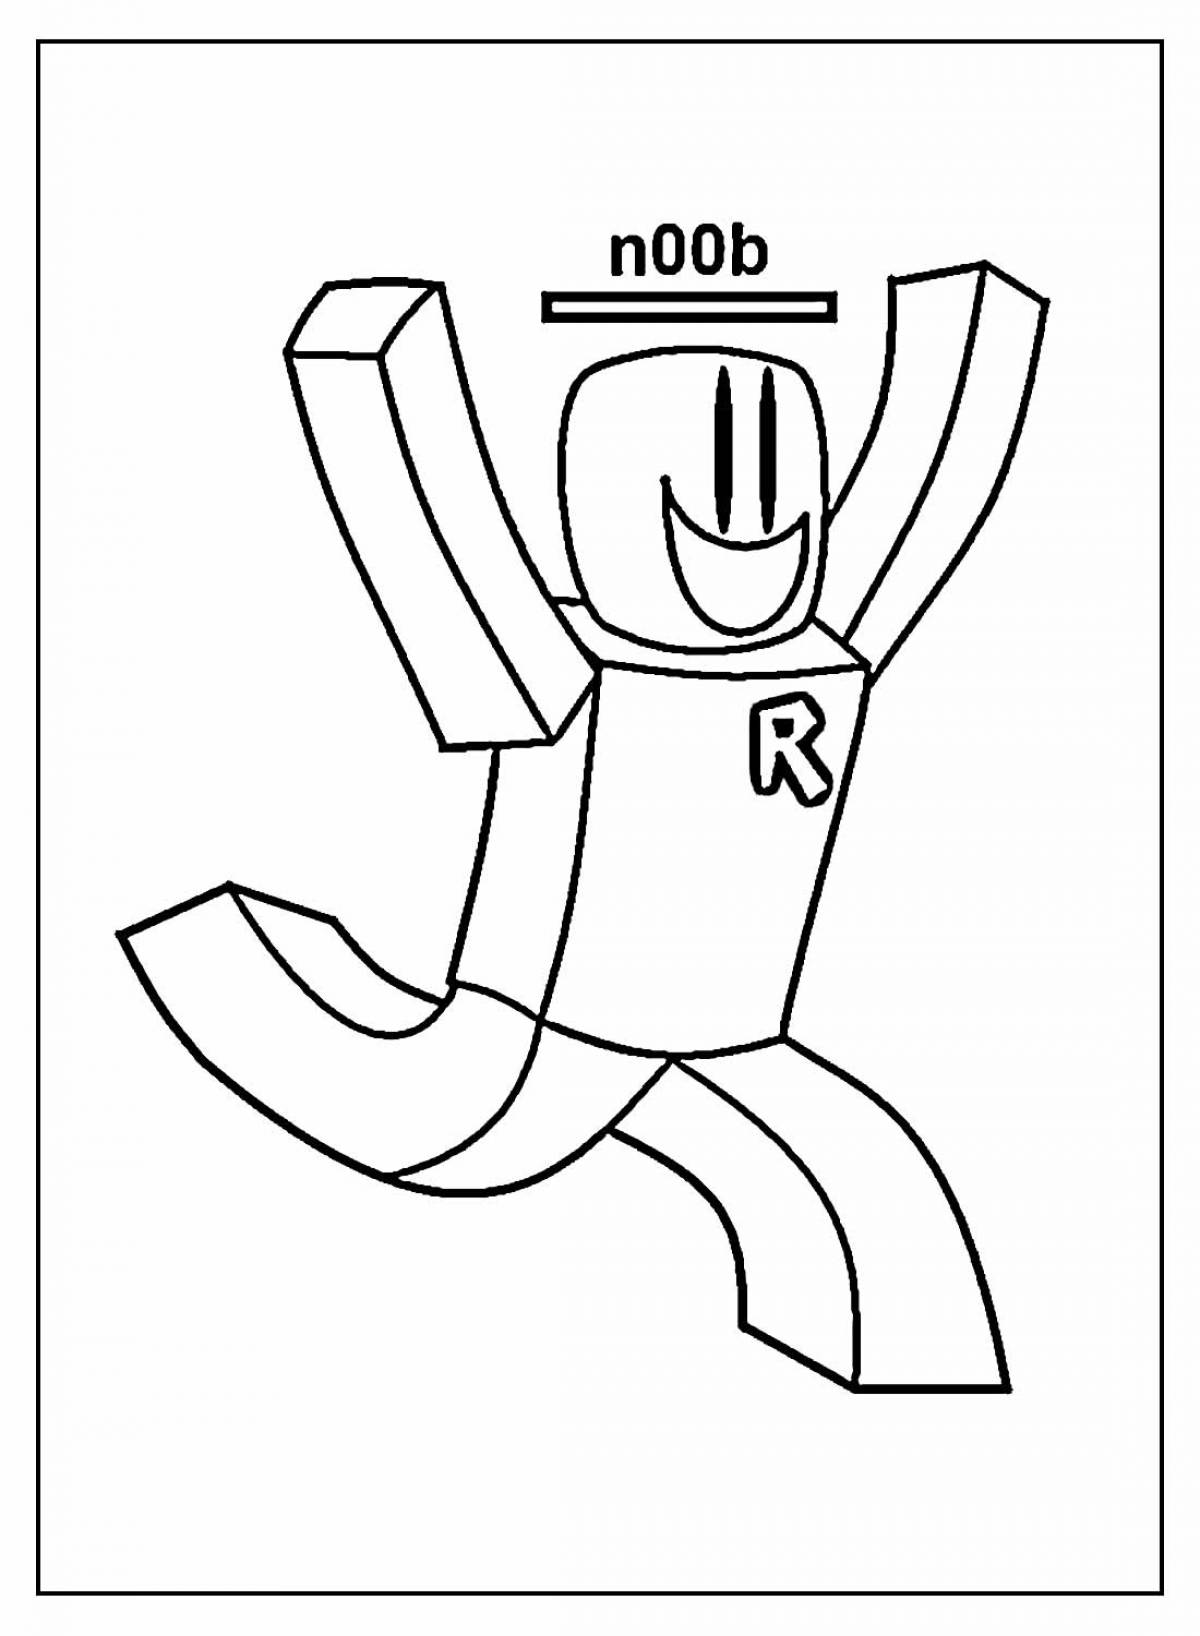 Roblox noob #1